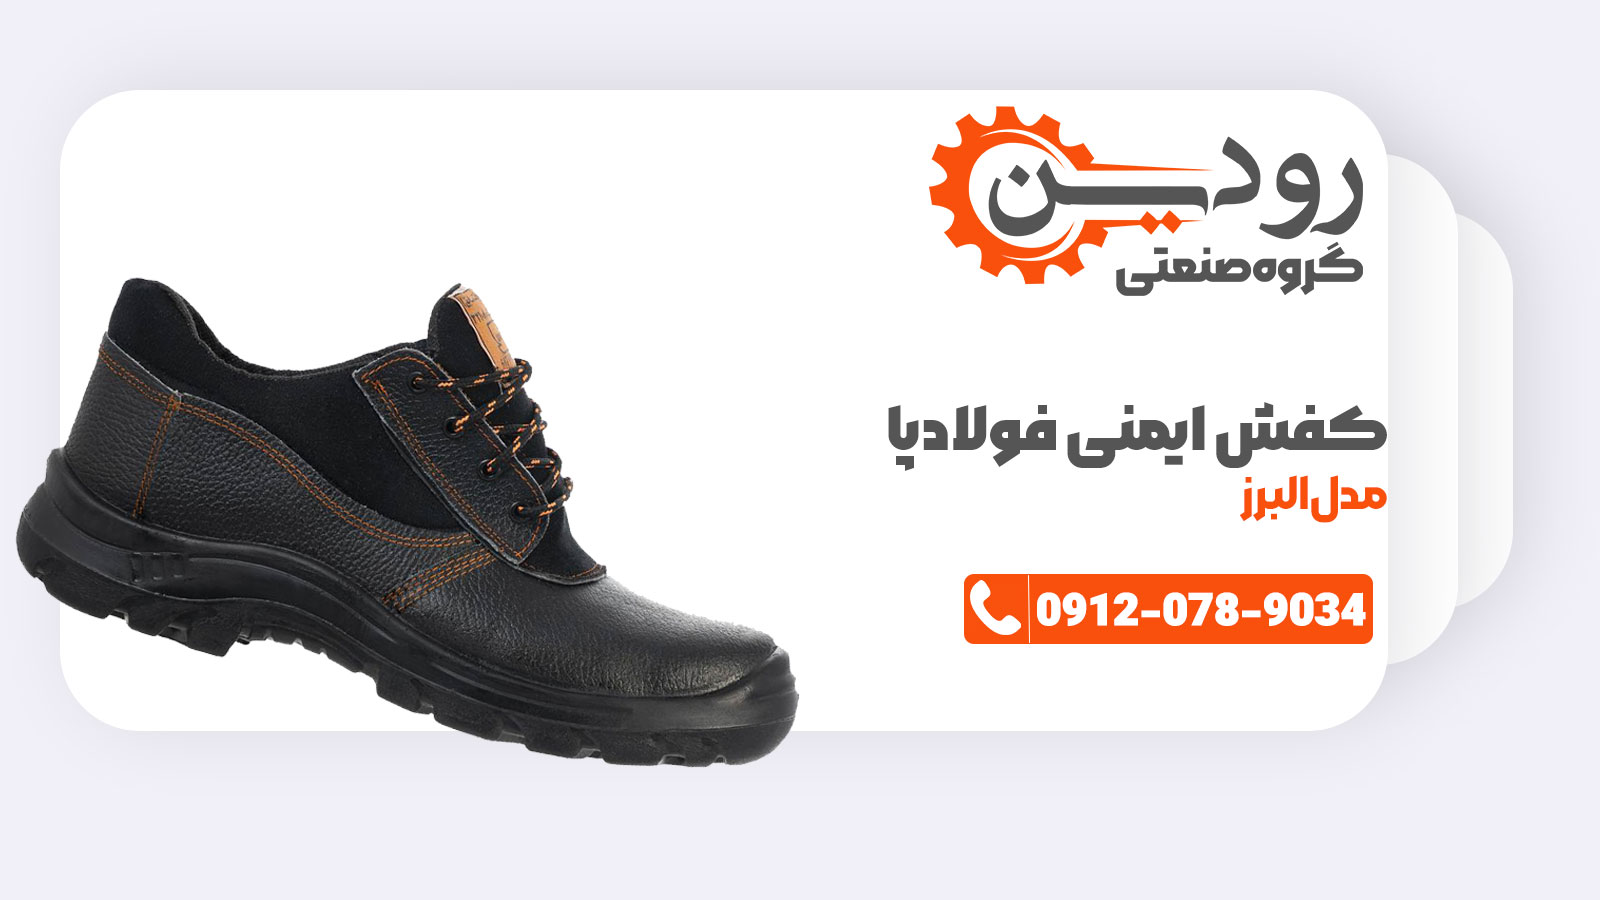 قیمت کفش ایمنی فولادپا همیشه ارزان و مناسب است.